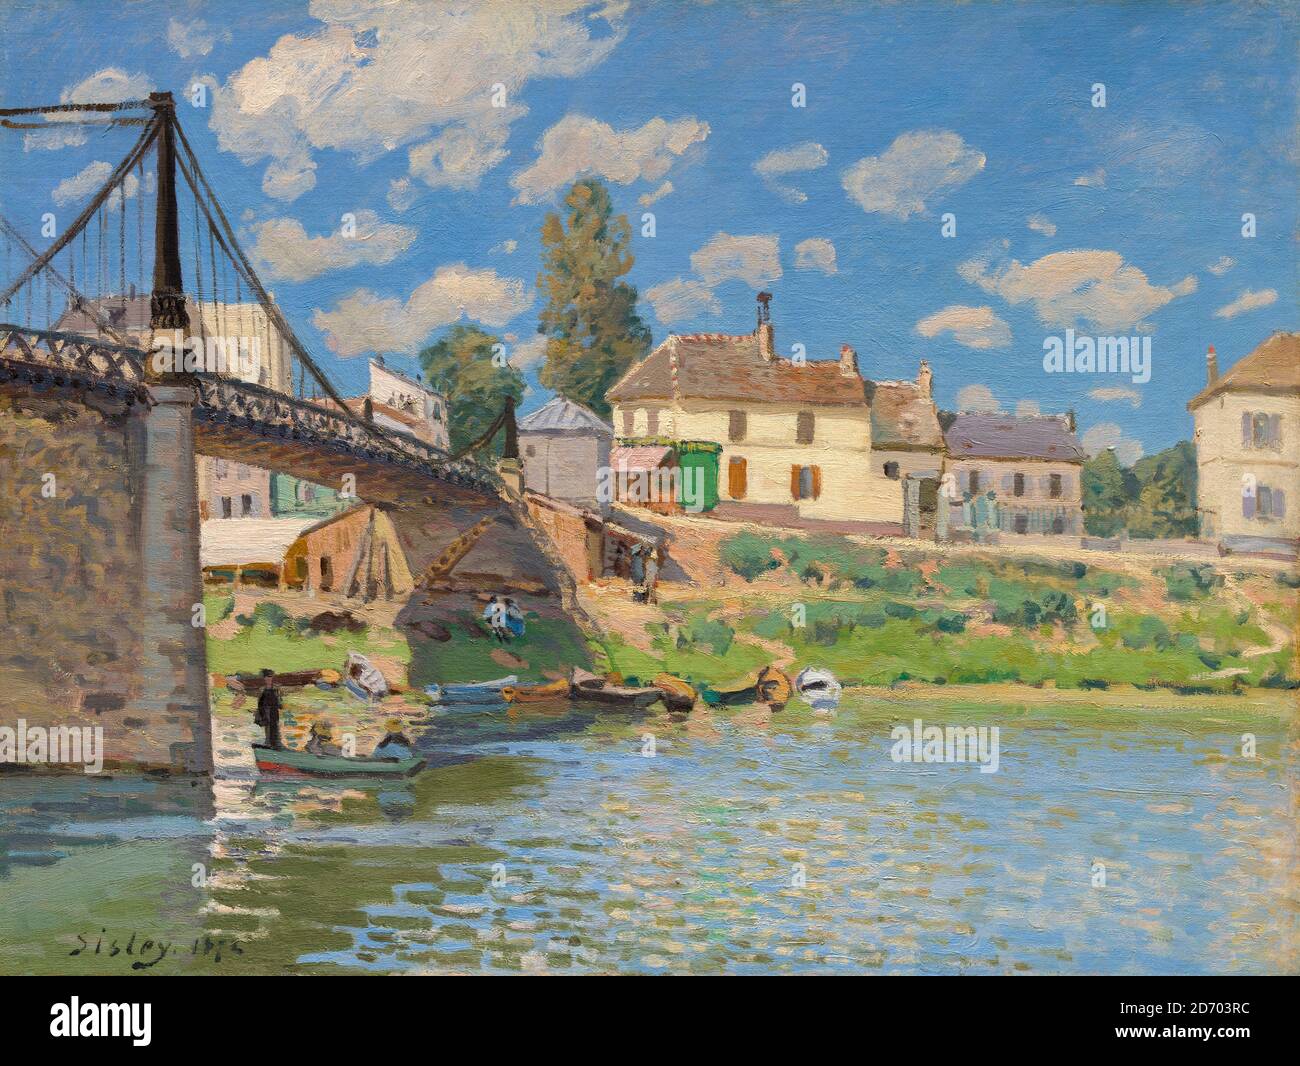 Alfred Sisley, peinture de paysage impressionniste, le pont de Villeneuve-la-Garenne, 1872 Banque D'Images